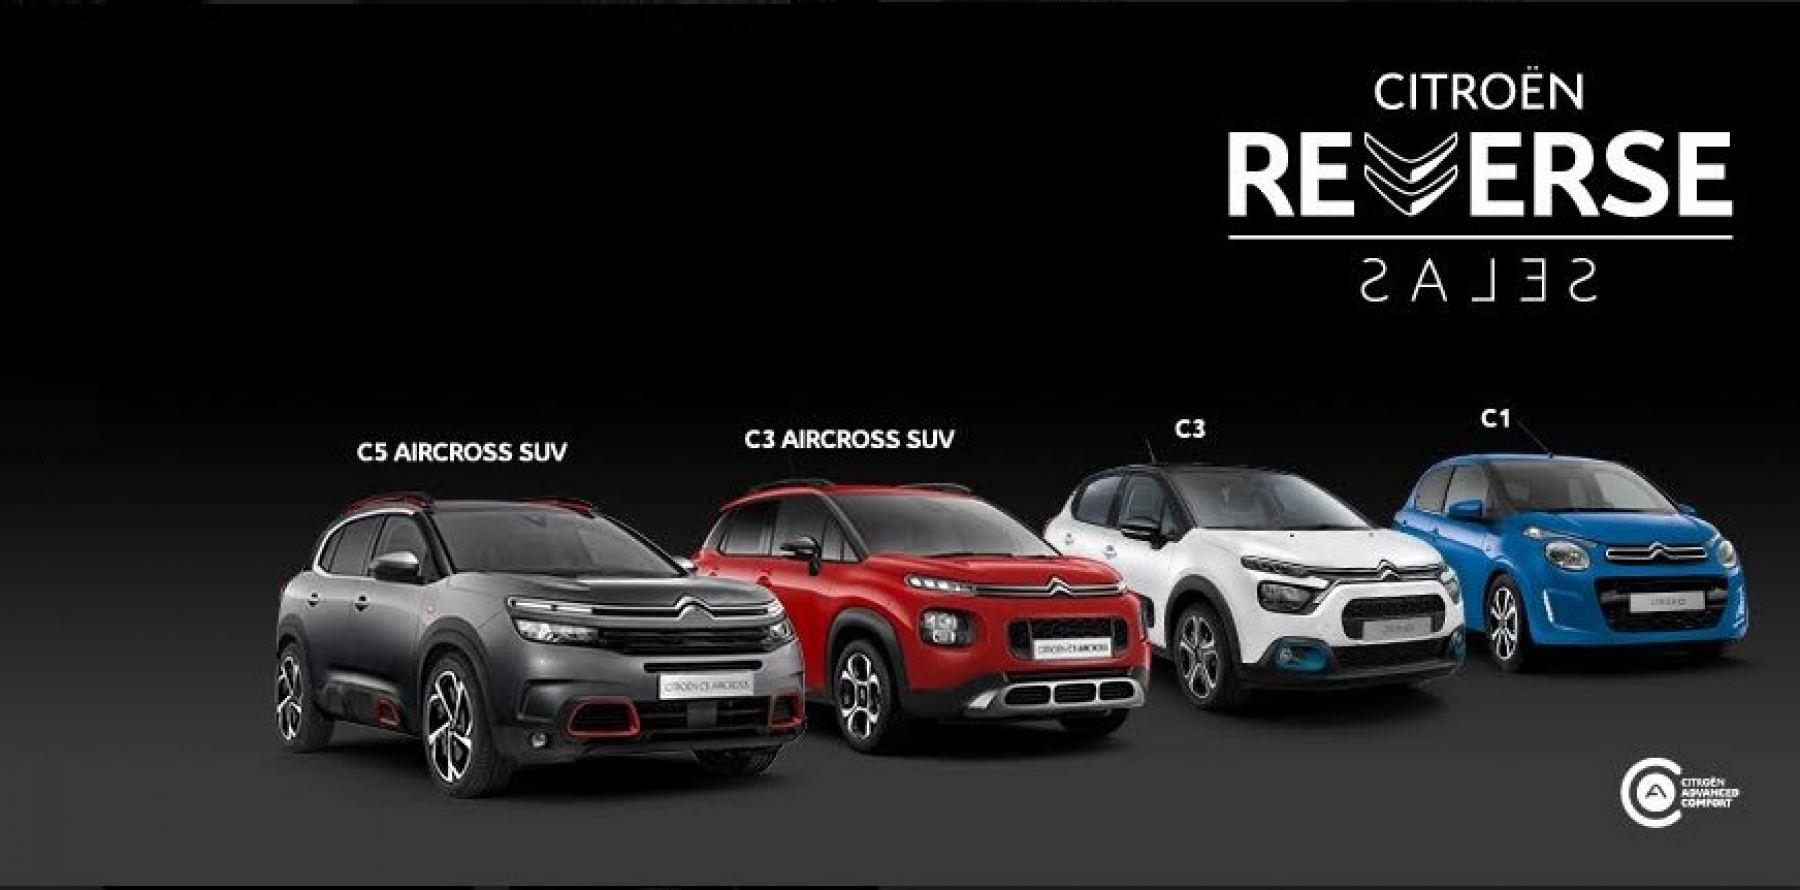 Για ακόμη μία χρονιά Citroën Reverse Sales!